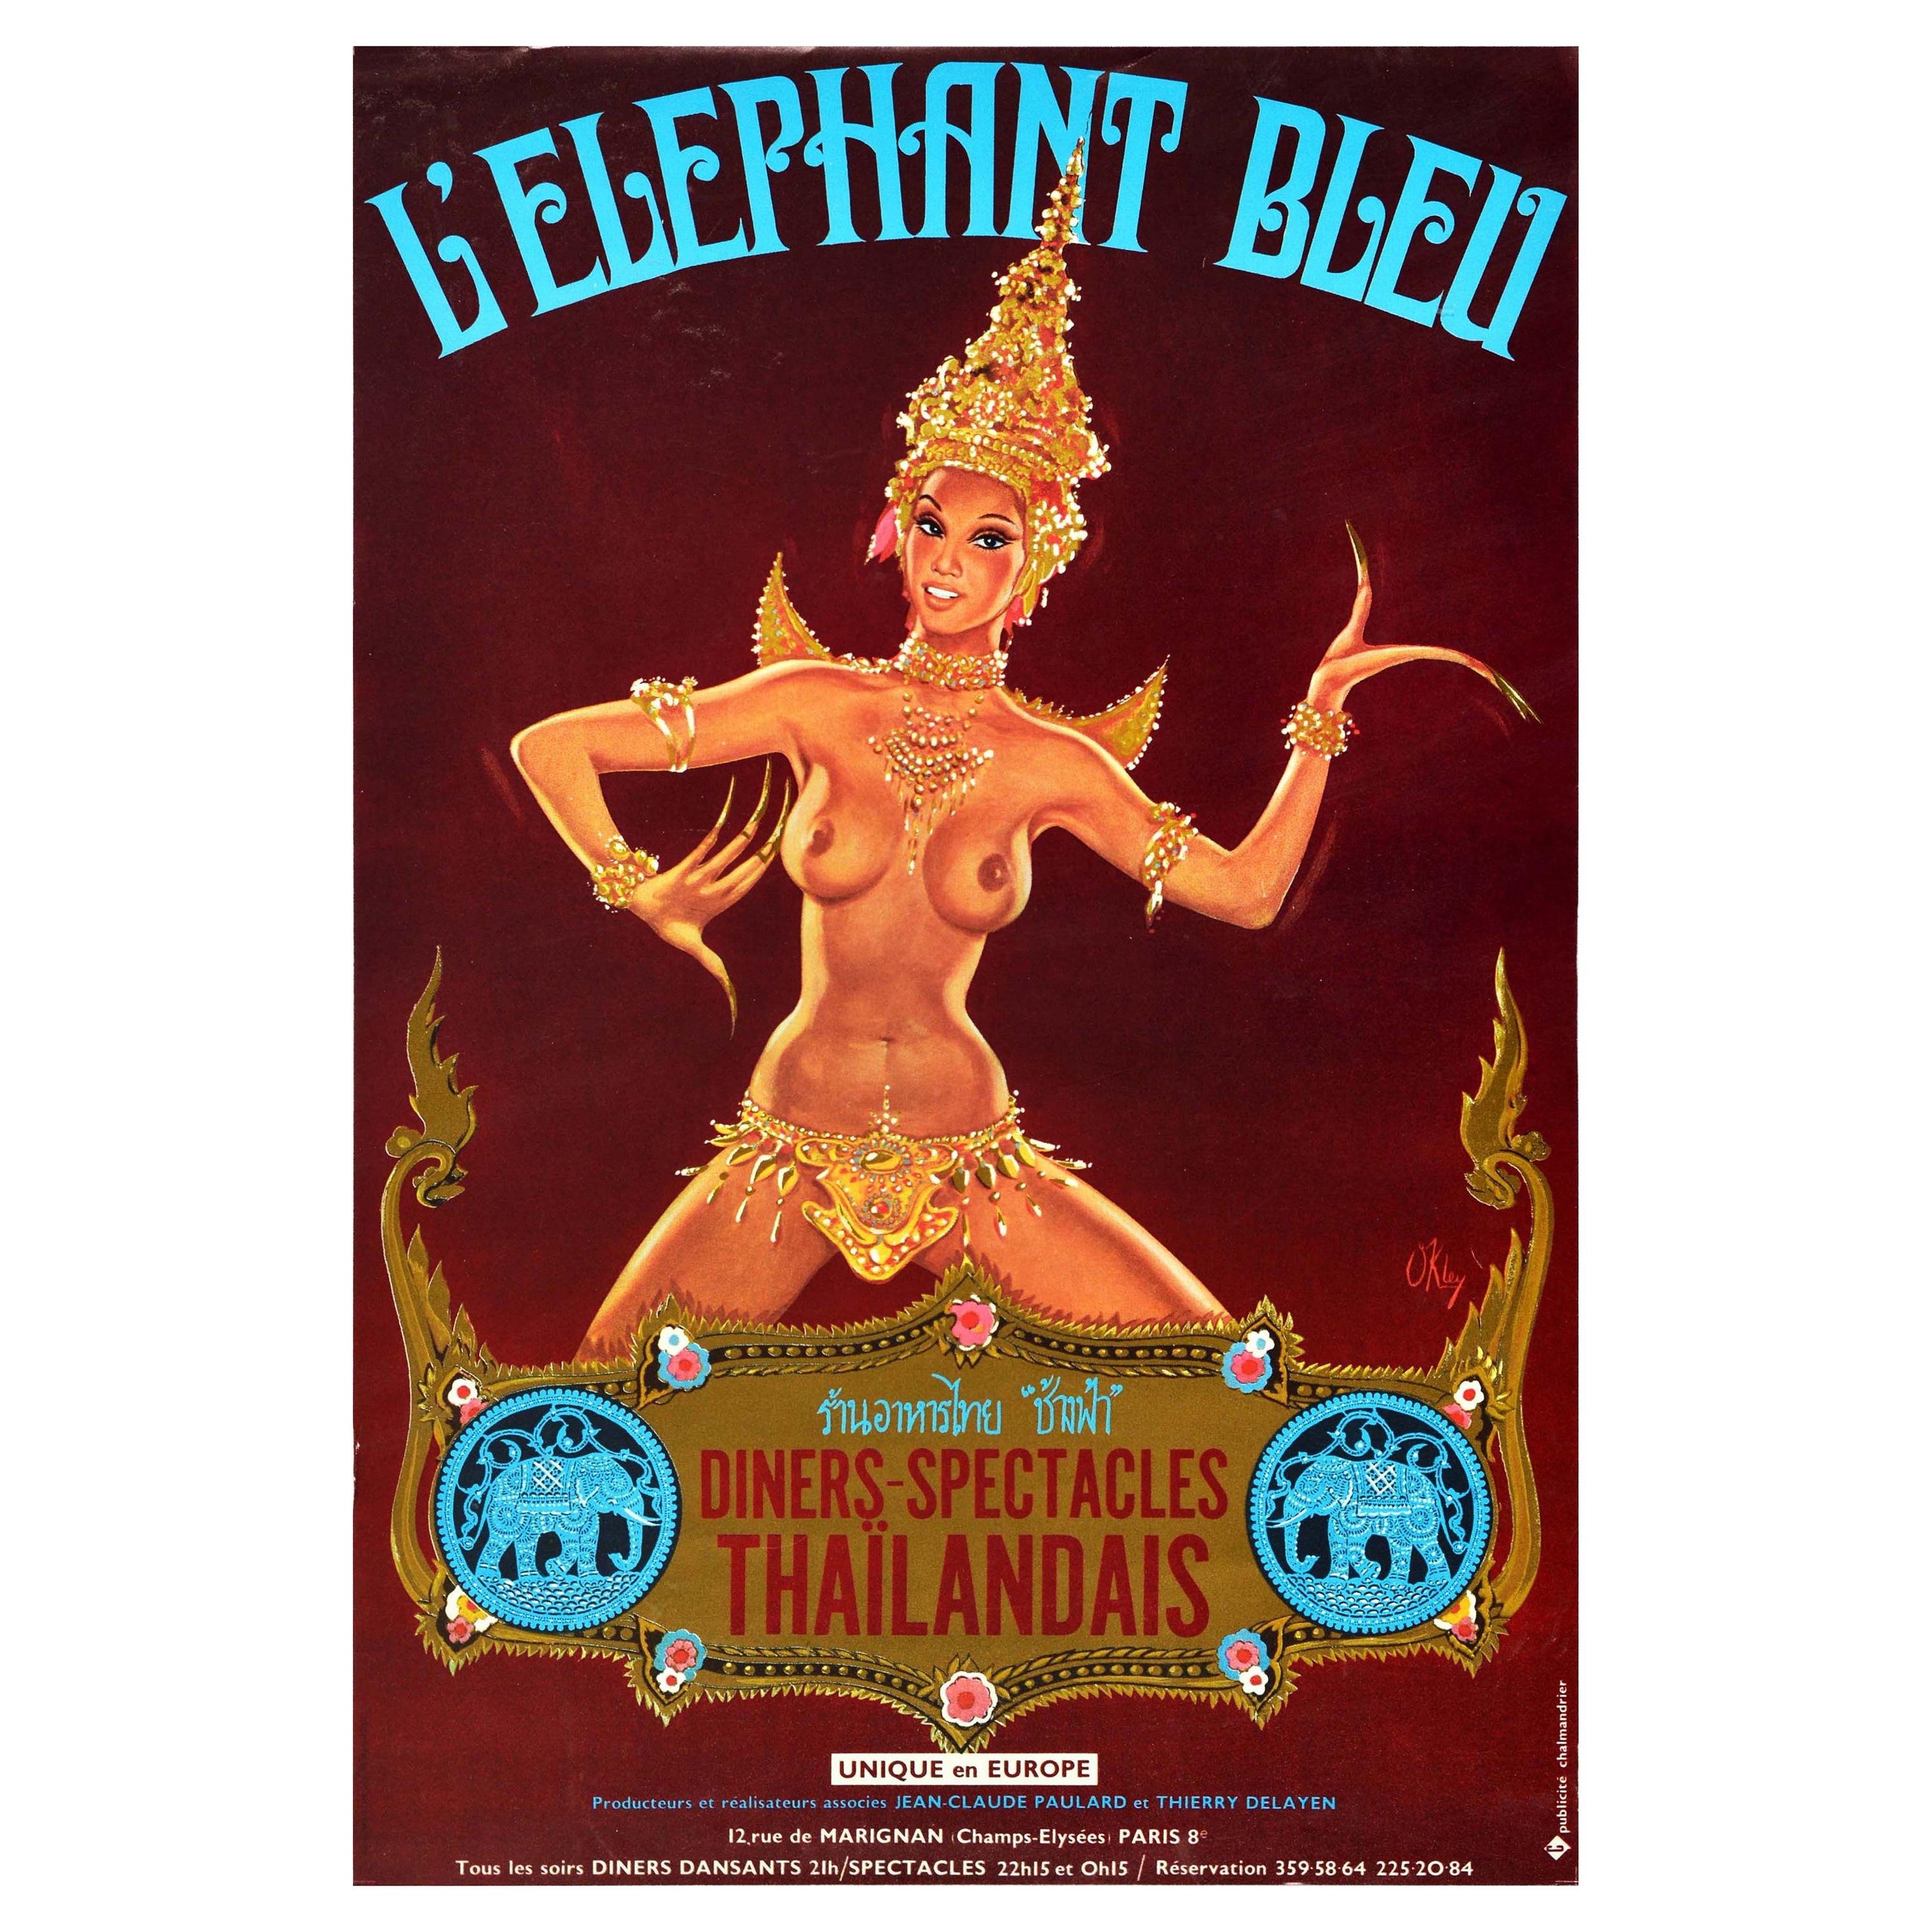 Original-Vintage-Poster, blauer Elefant, Bleu Champs Elysees, Paris, Thai, Pin Up